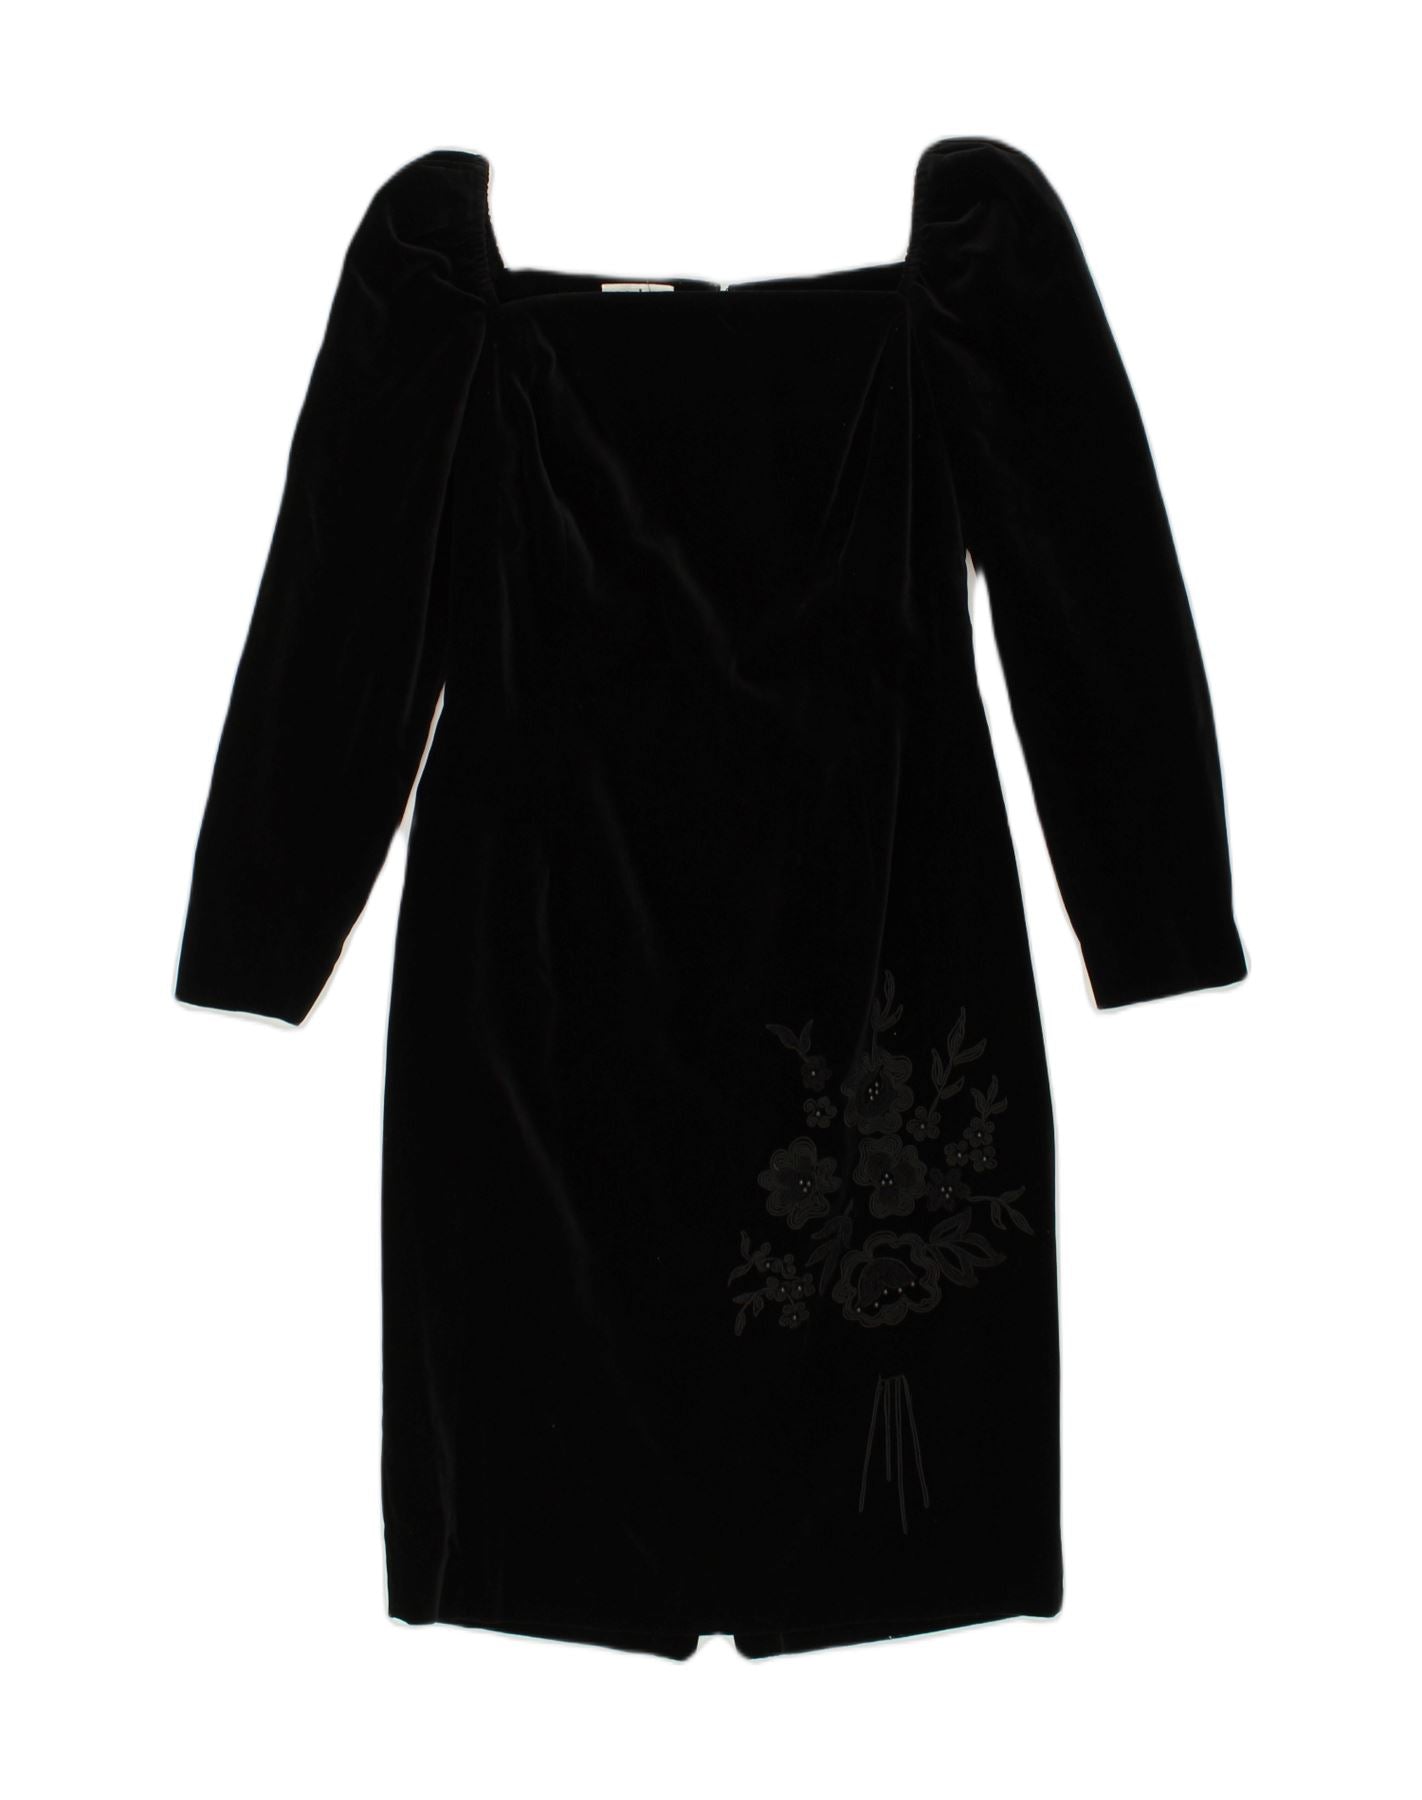 MODYVA Womens Long Sleeve Velvet Bodycon Dress UK 8 Small Black